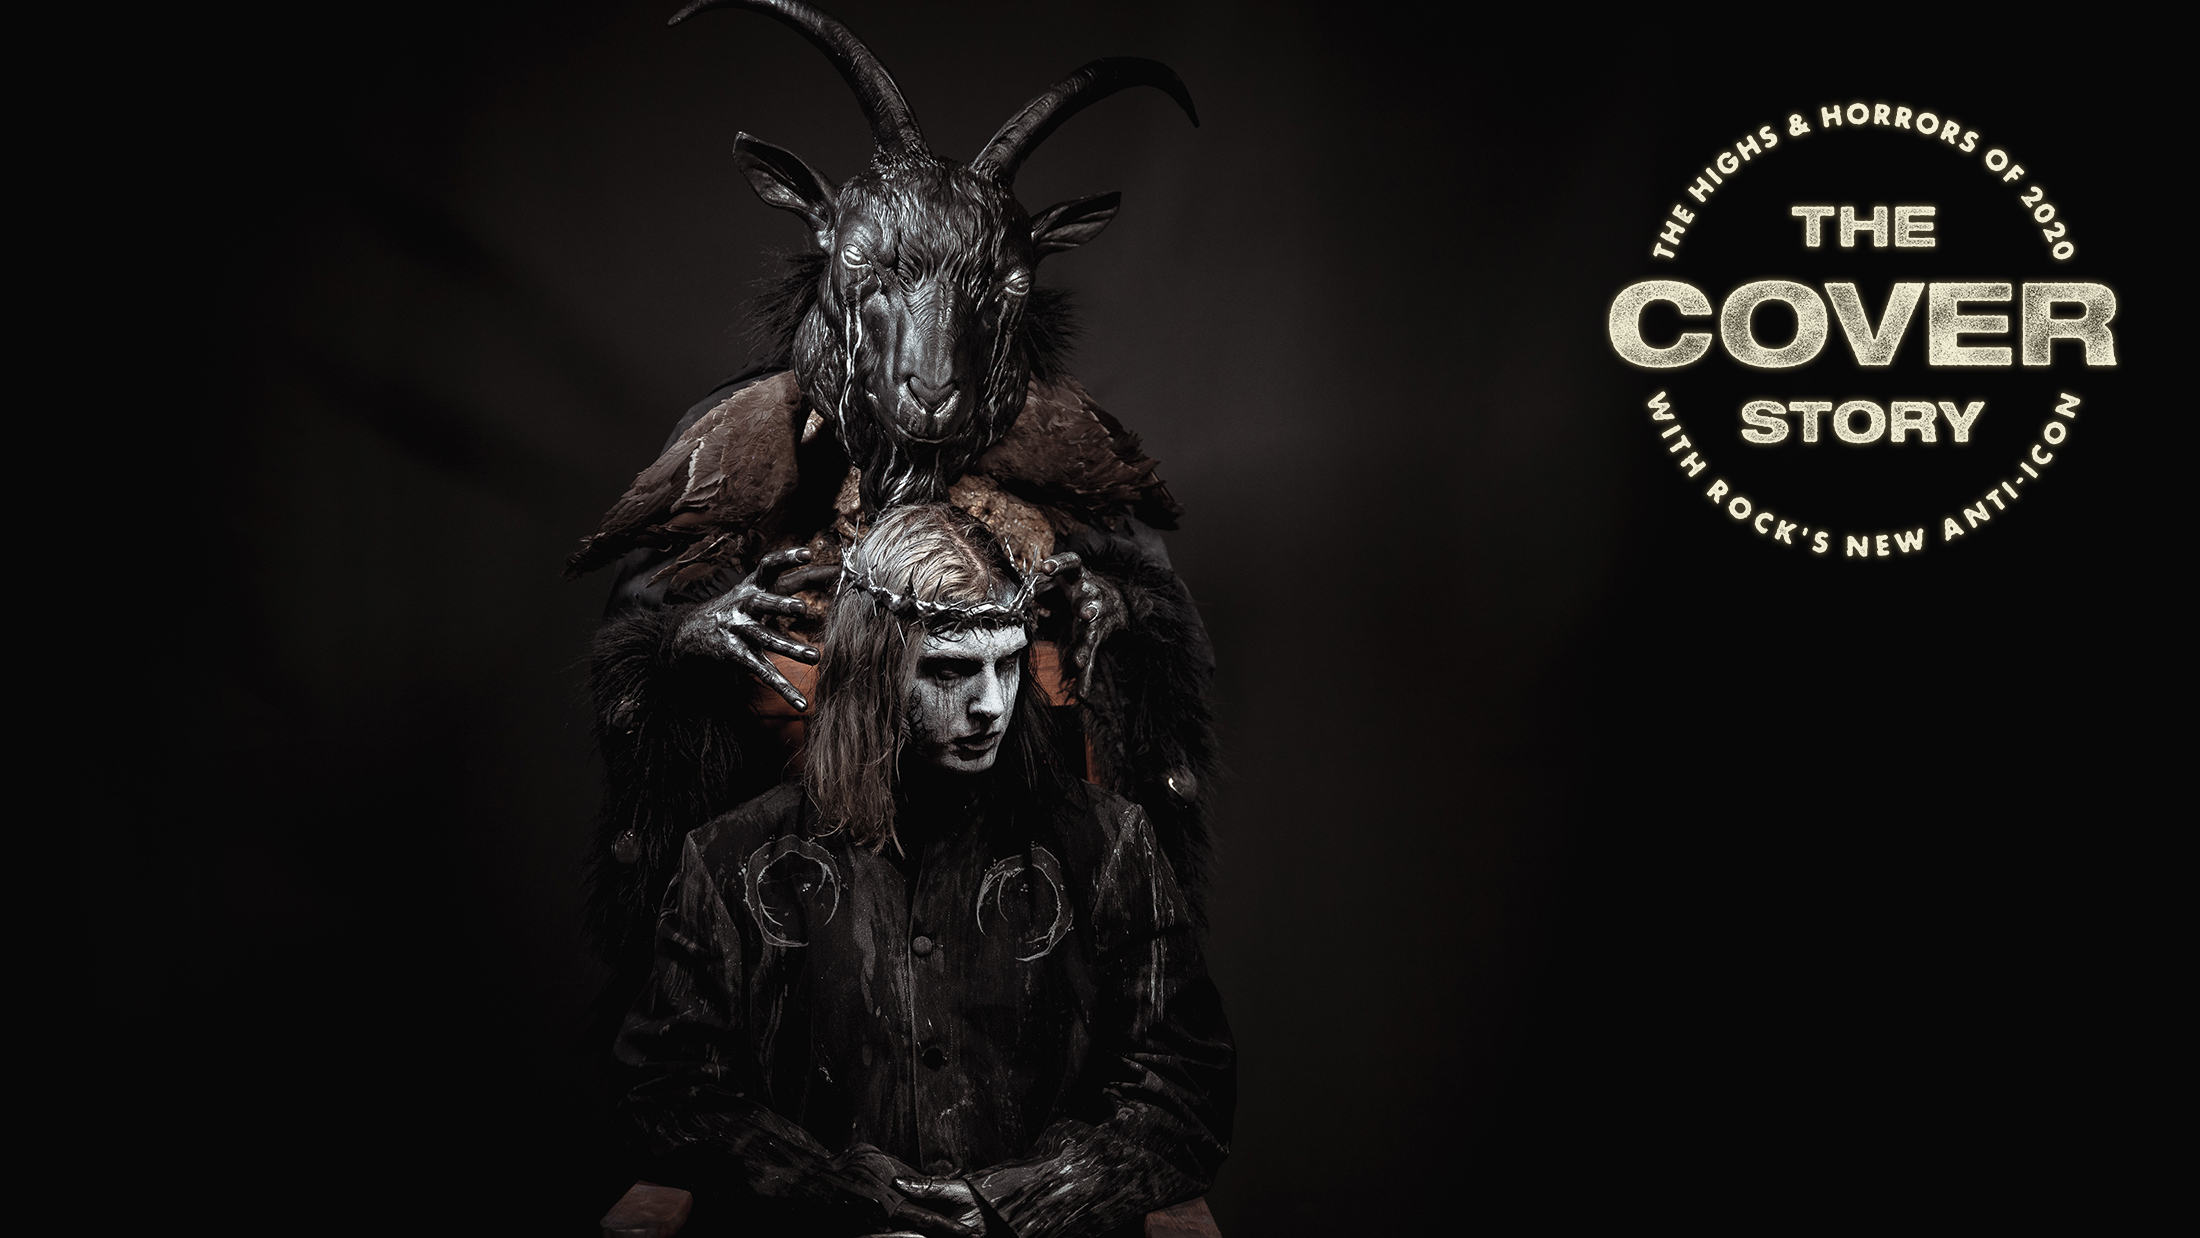 Ghostemane: ANTI-ICON Album Review